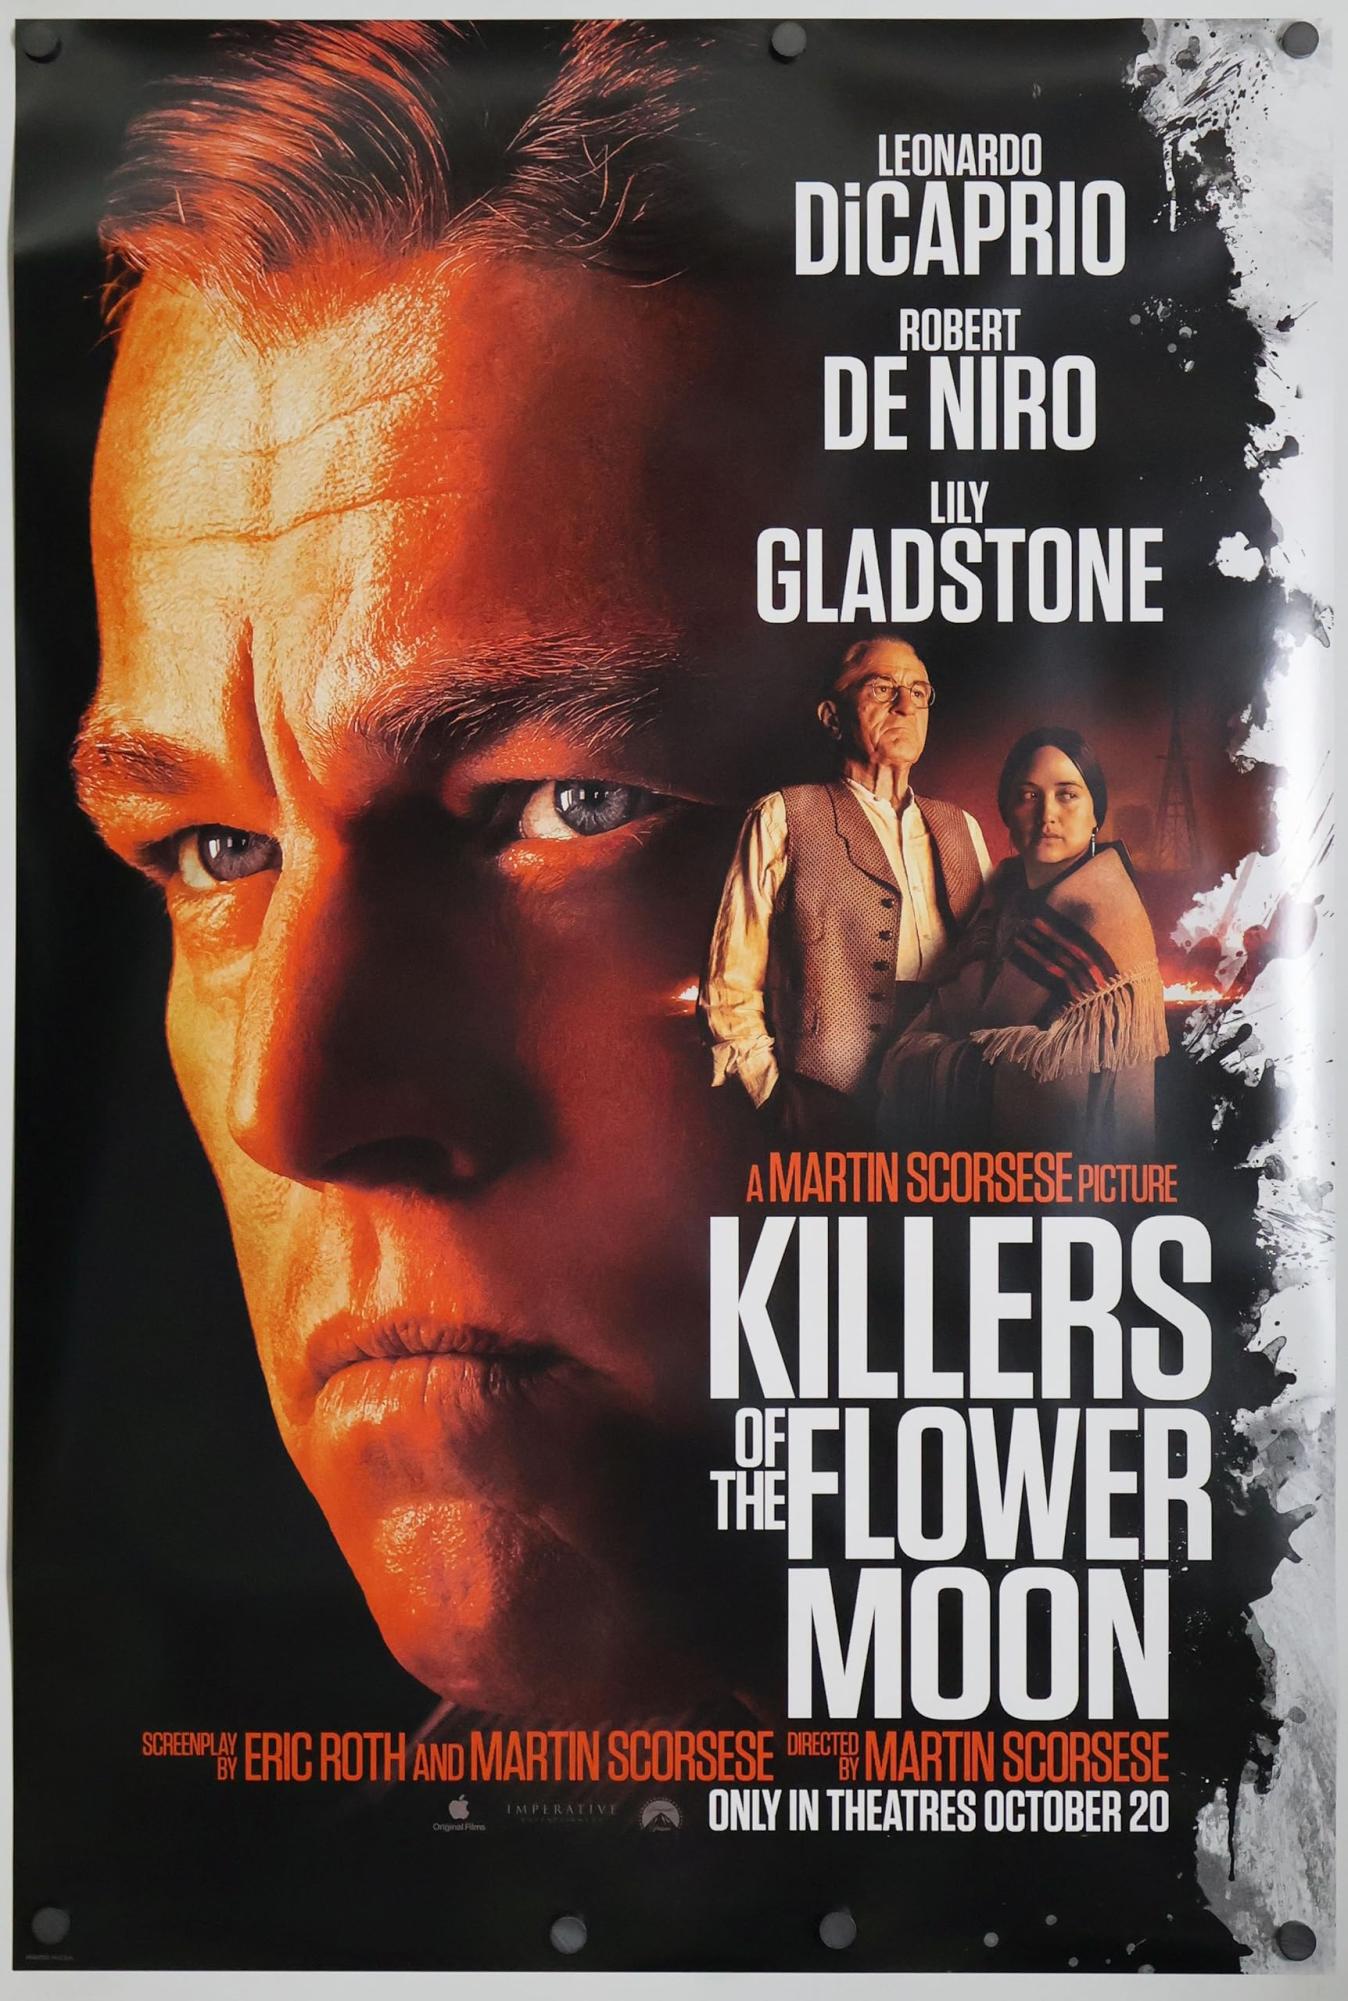 Robert De Niro in “Killers of the Flower Moon”